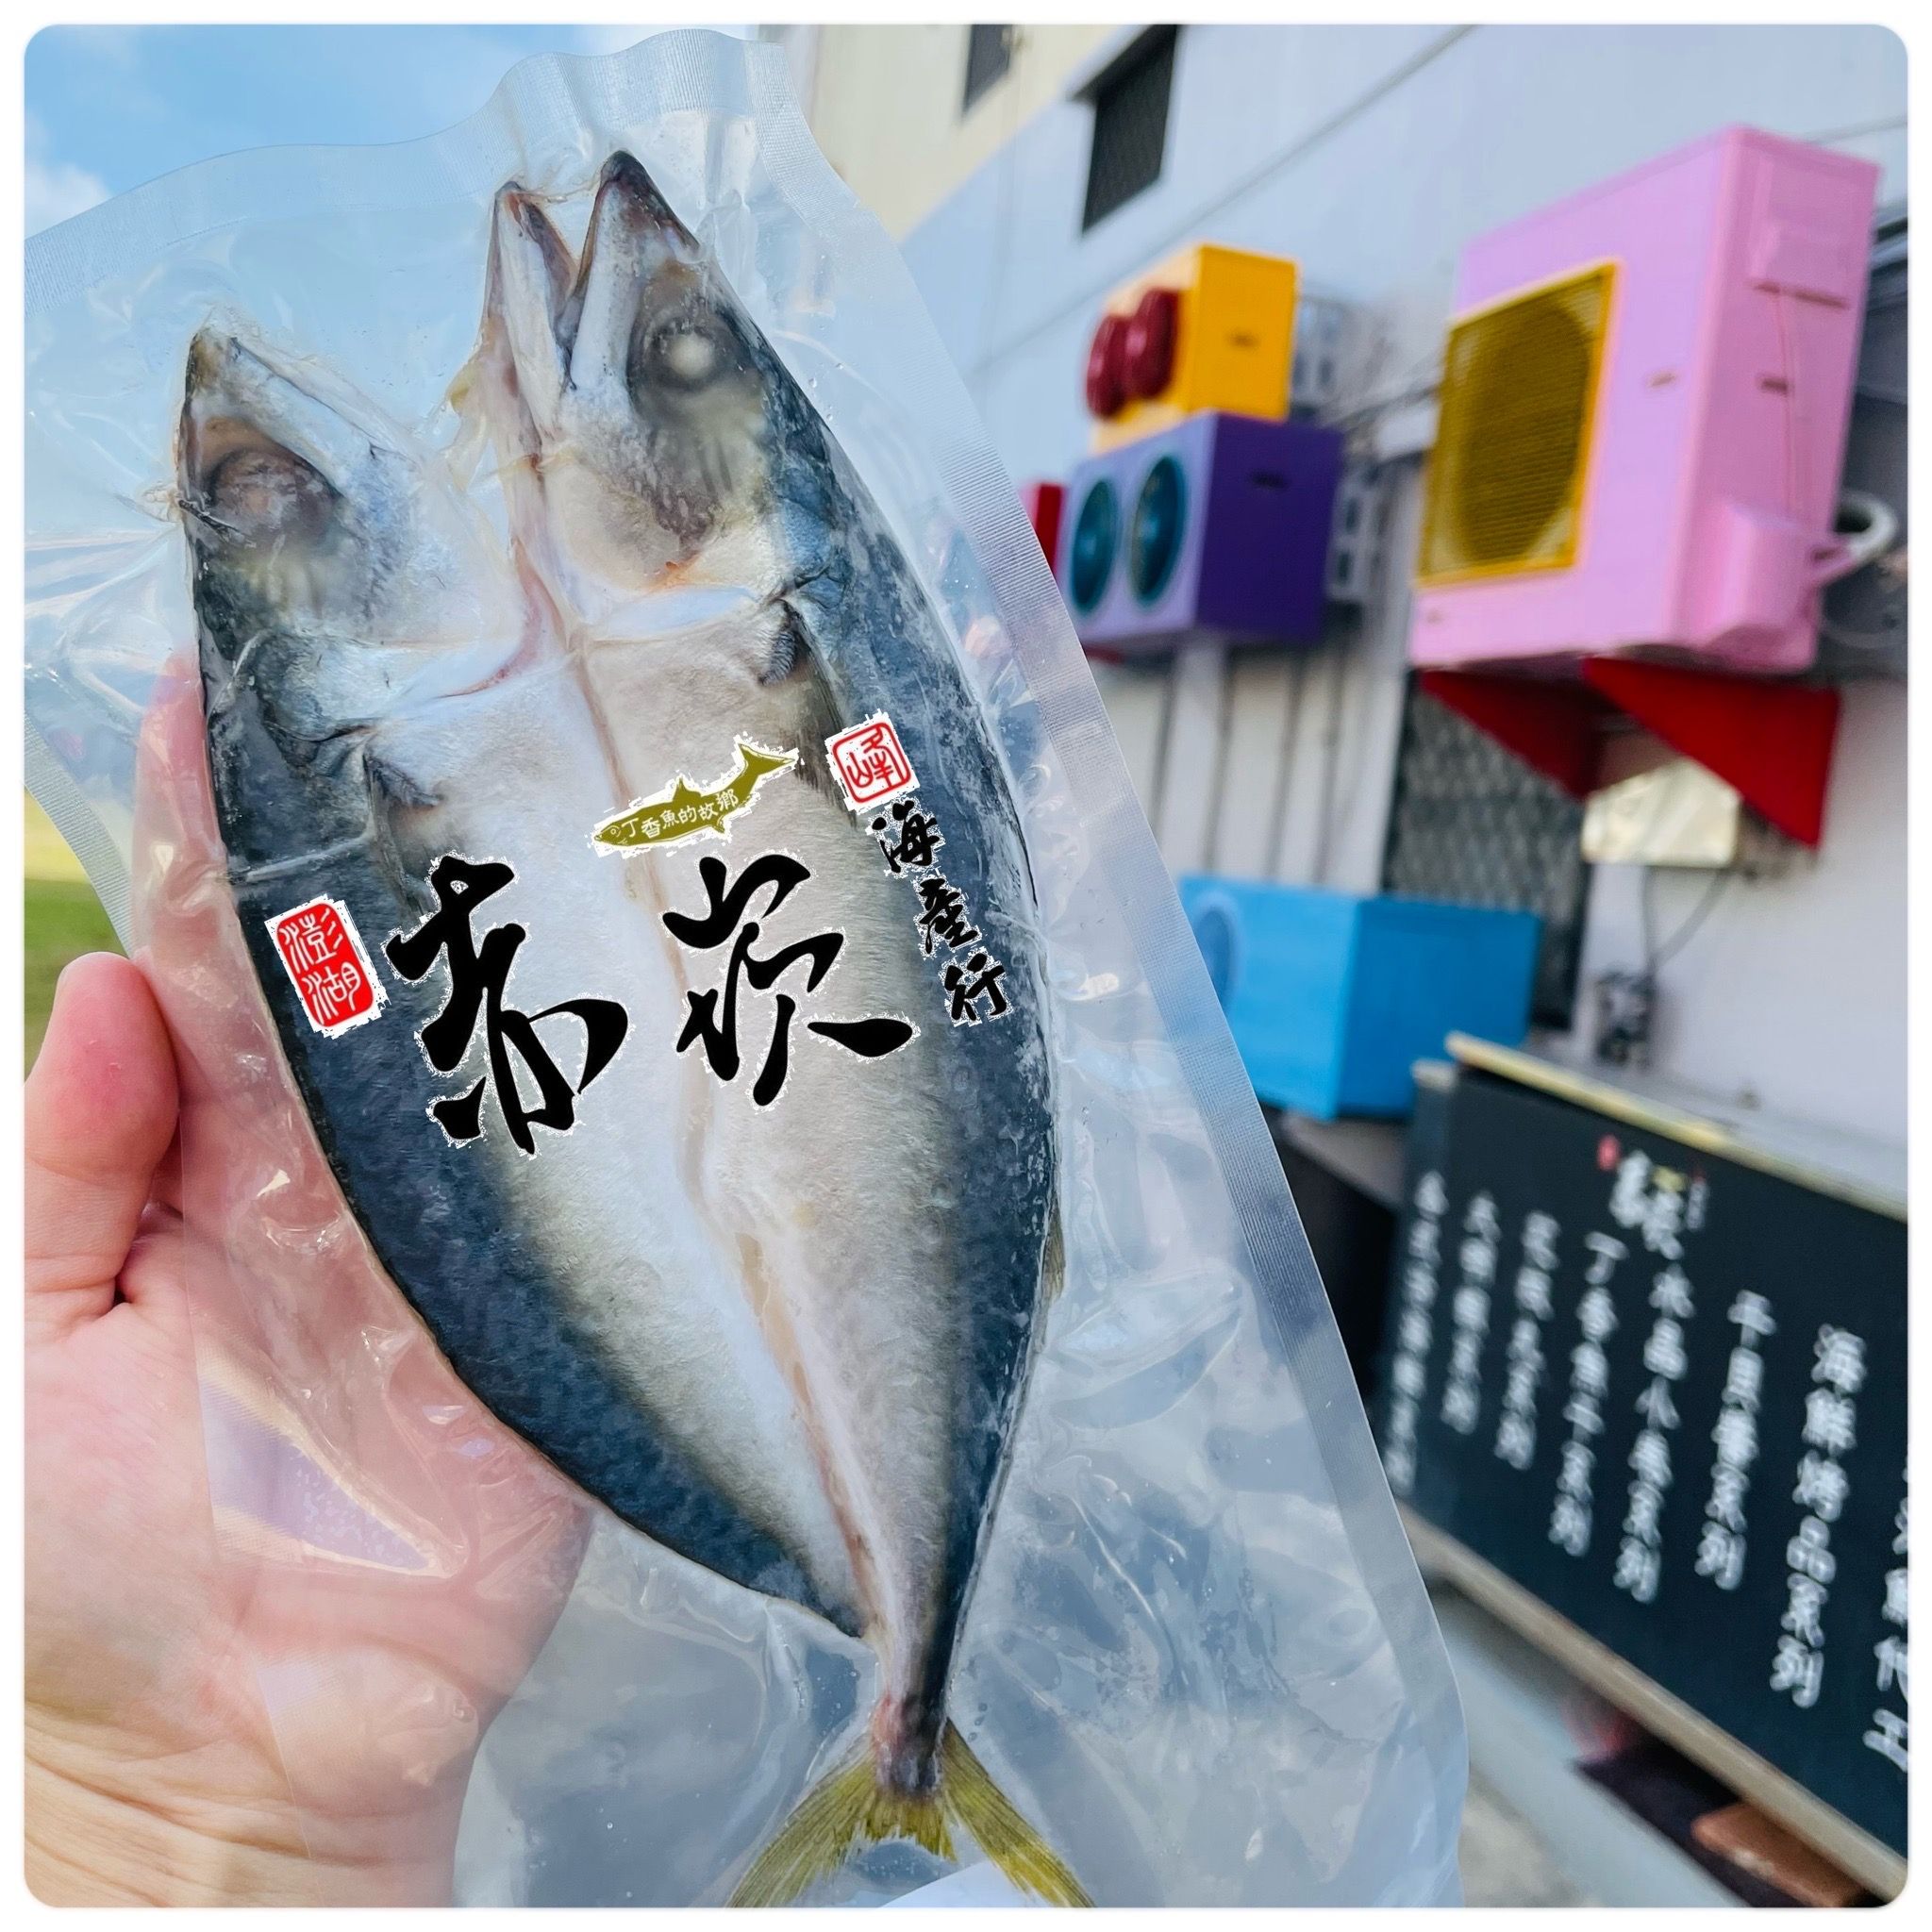 澎湖鯖魚 赤崁峰水產